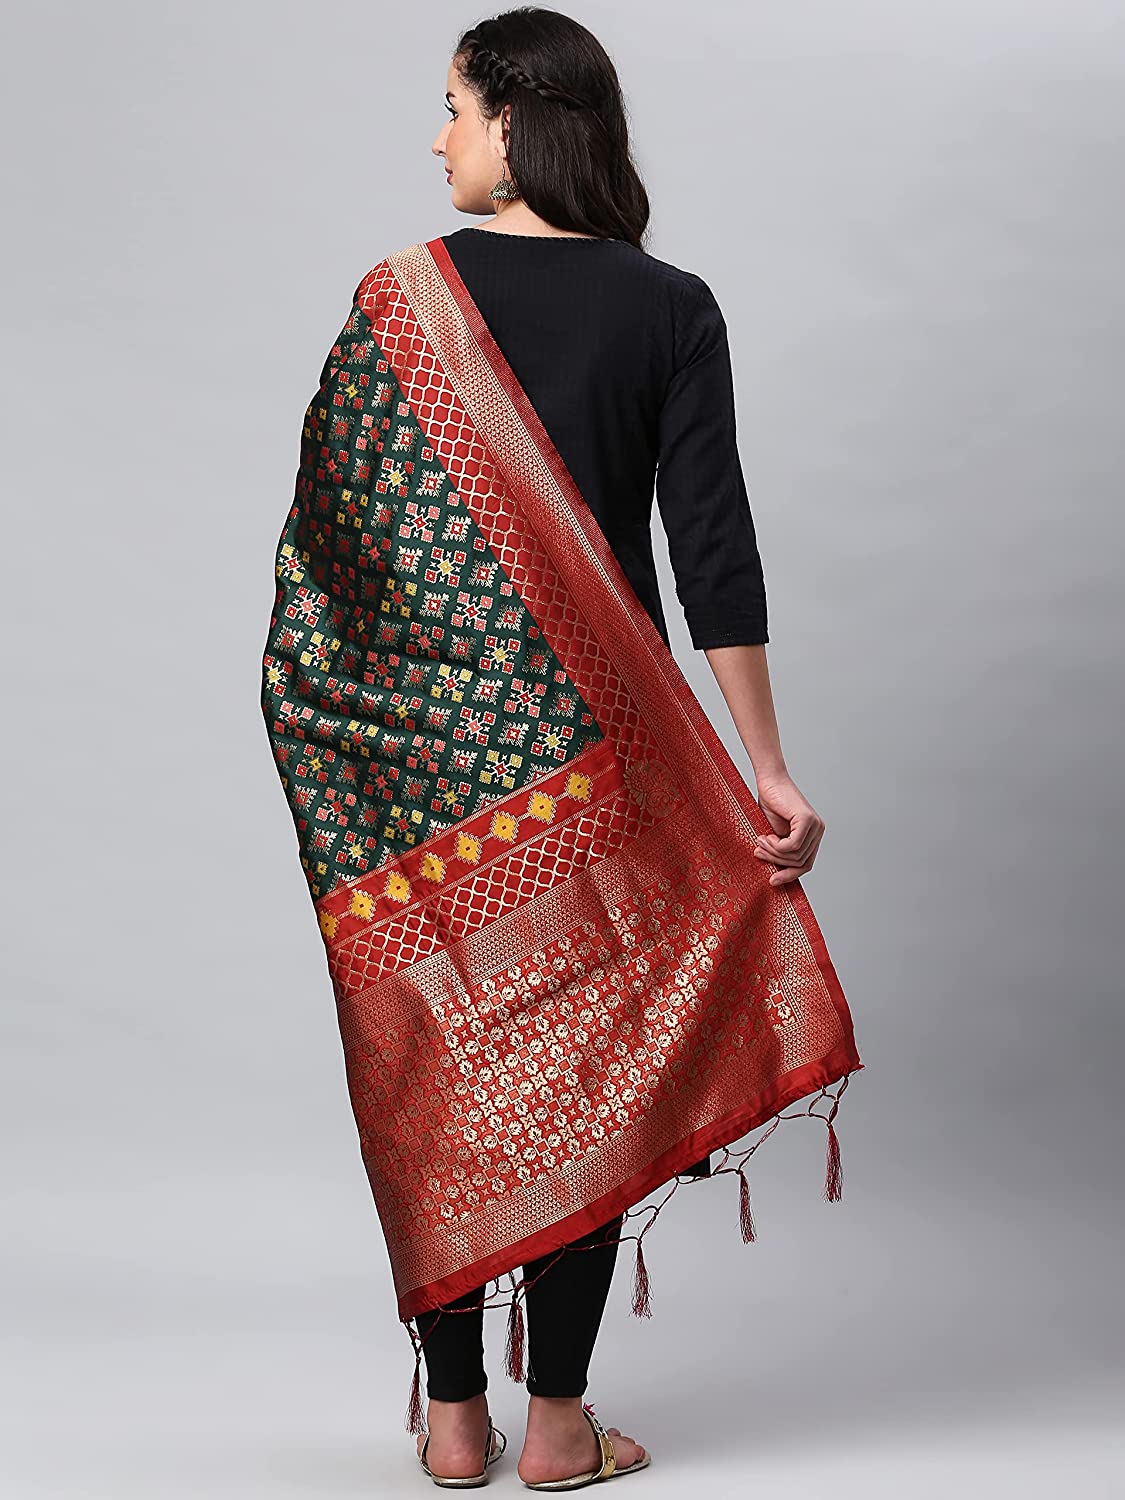 Lilots Women's Banarasi Silk Woven Dupatta